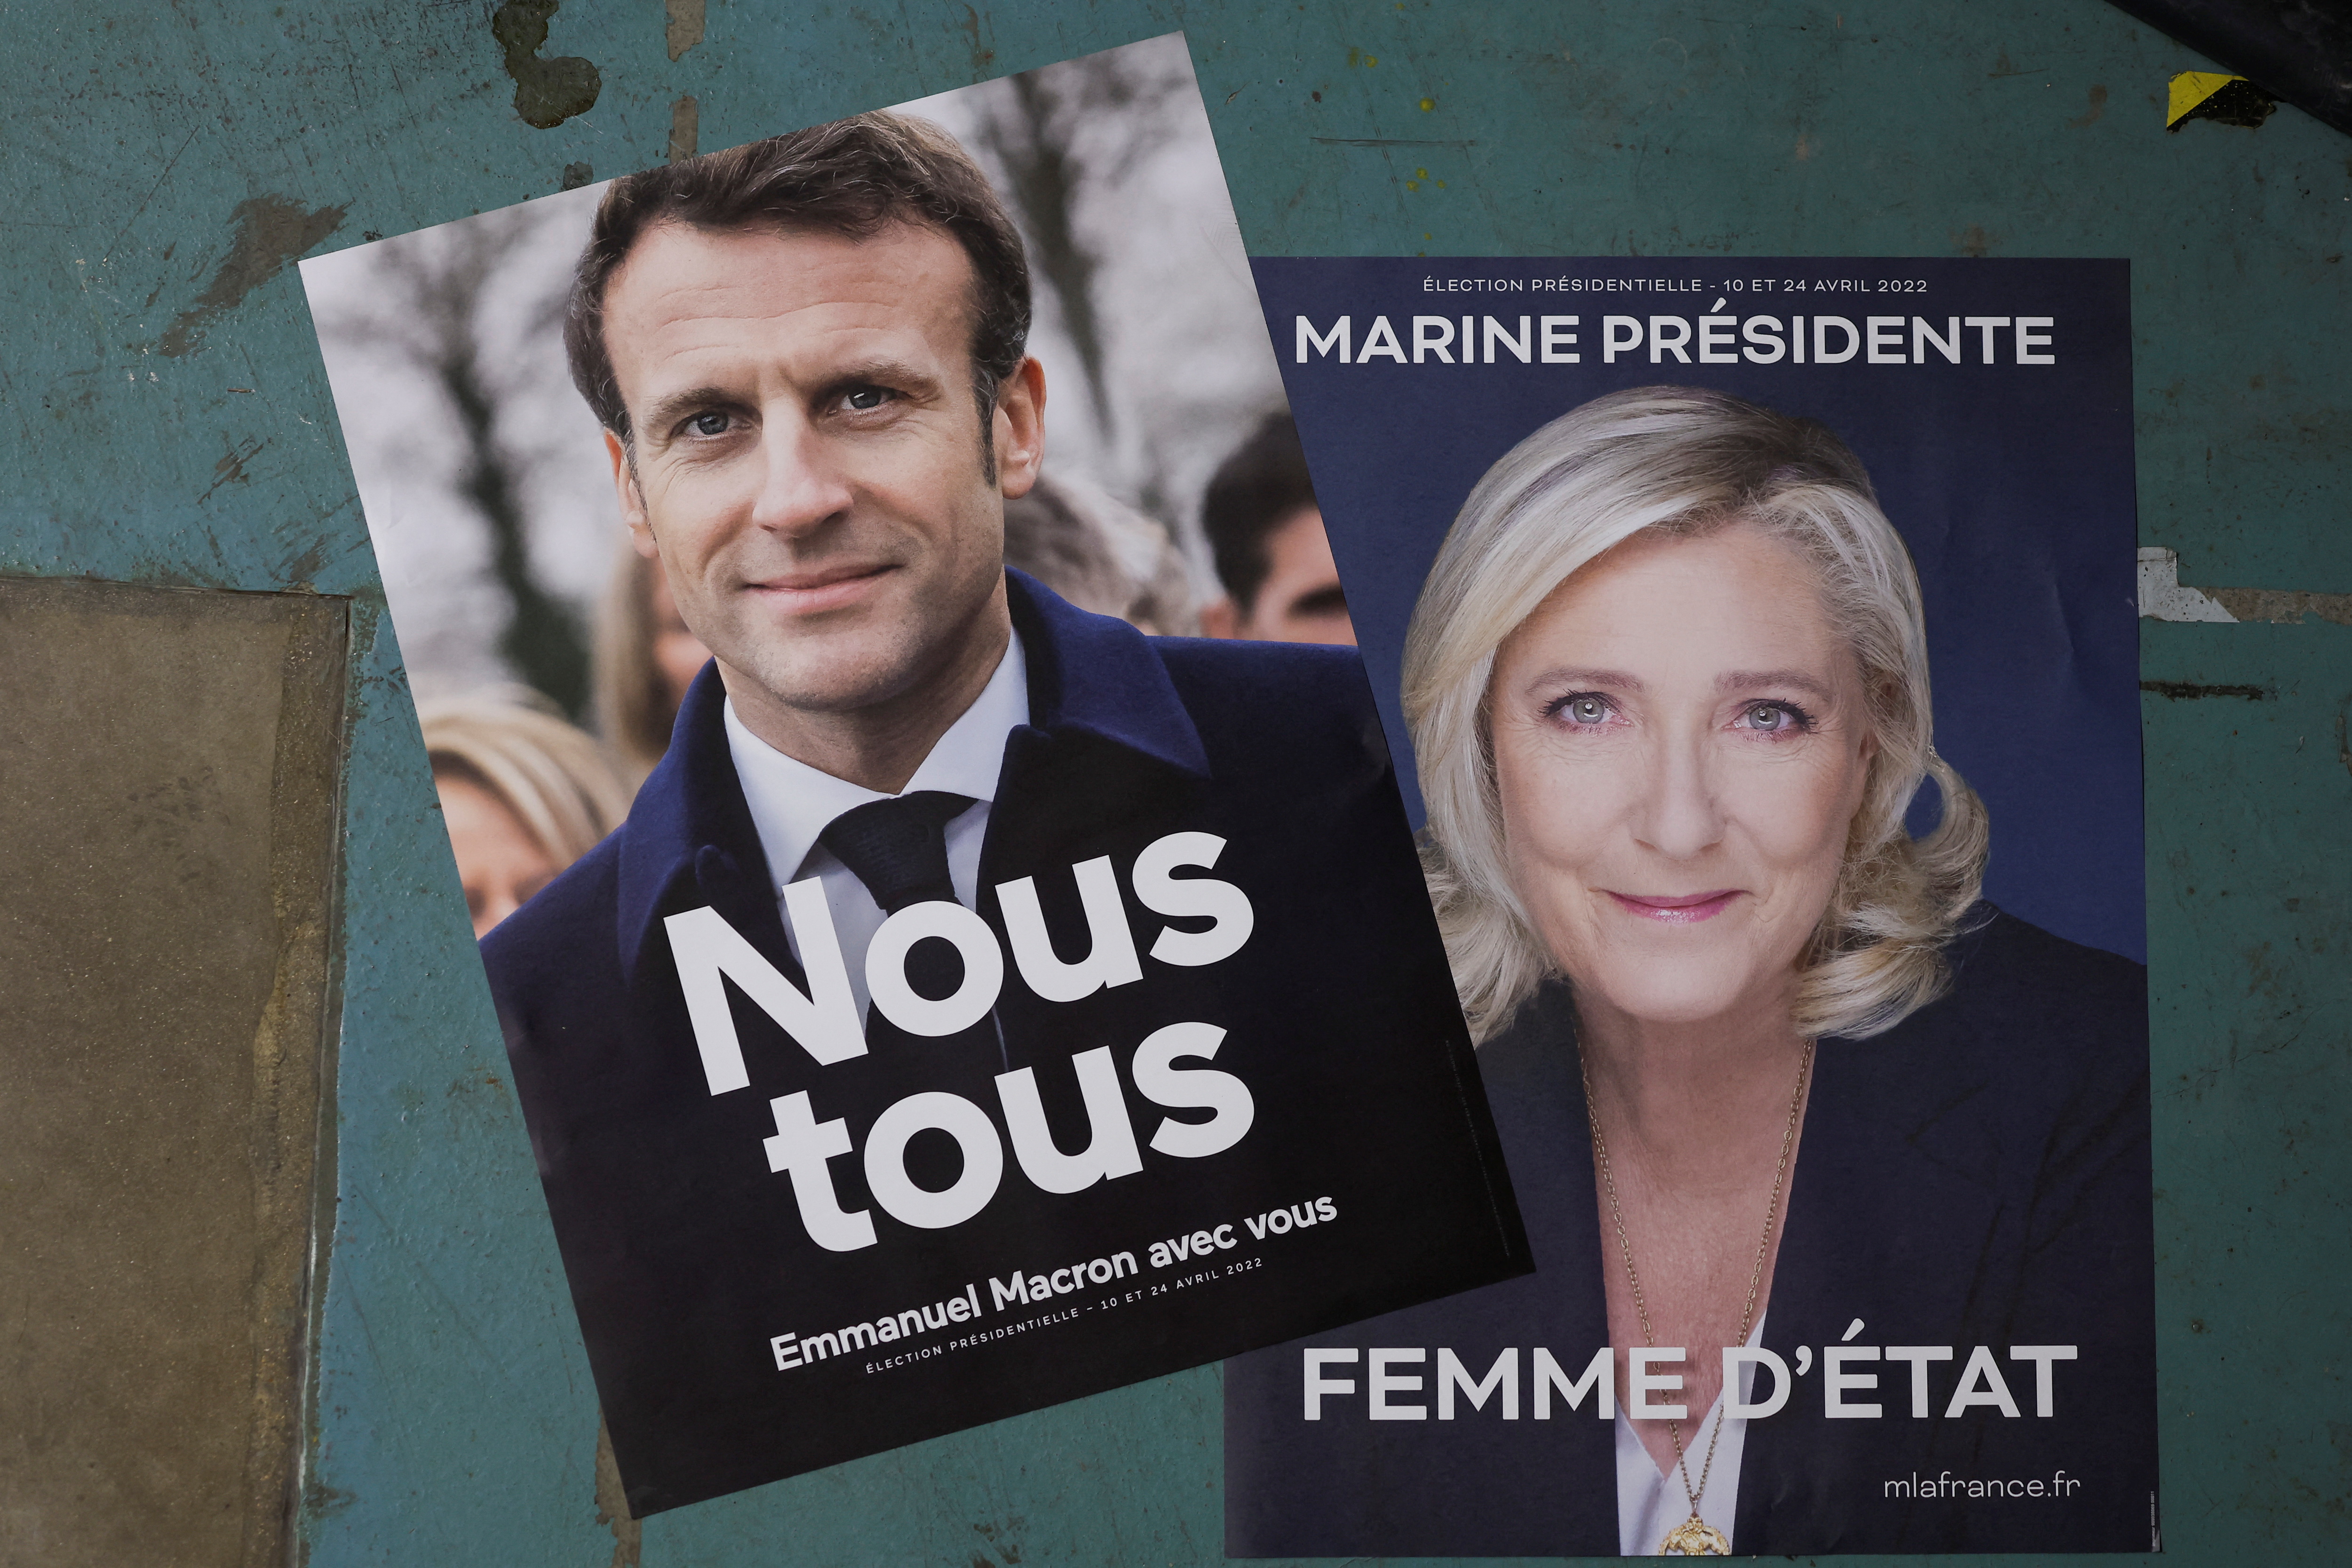 “Marine Le Pen miente a la gente”, subrayó Macron durante una entrevista al diario Le Parisien (REUTERS/Benoit Tessier)